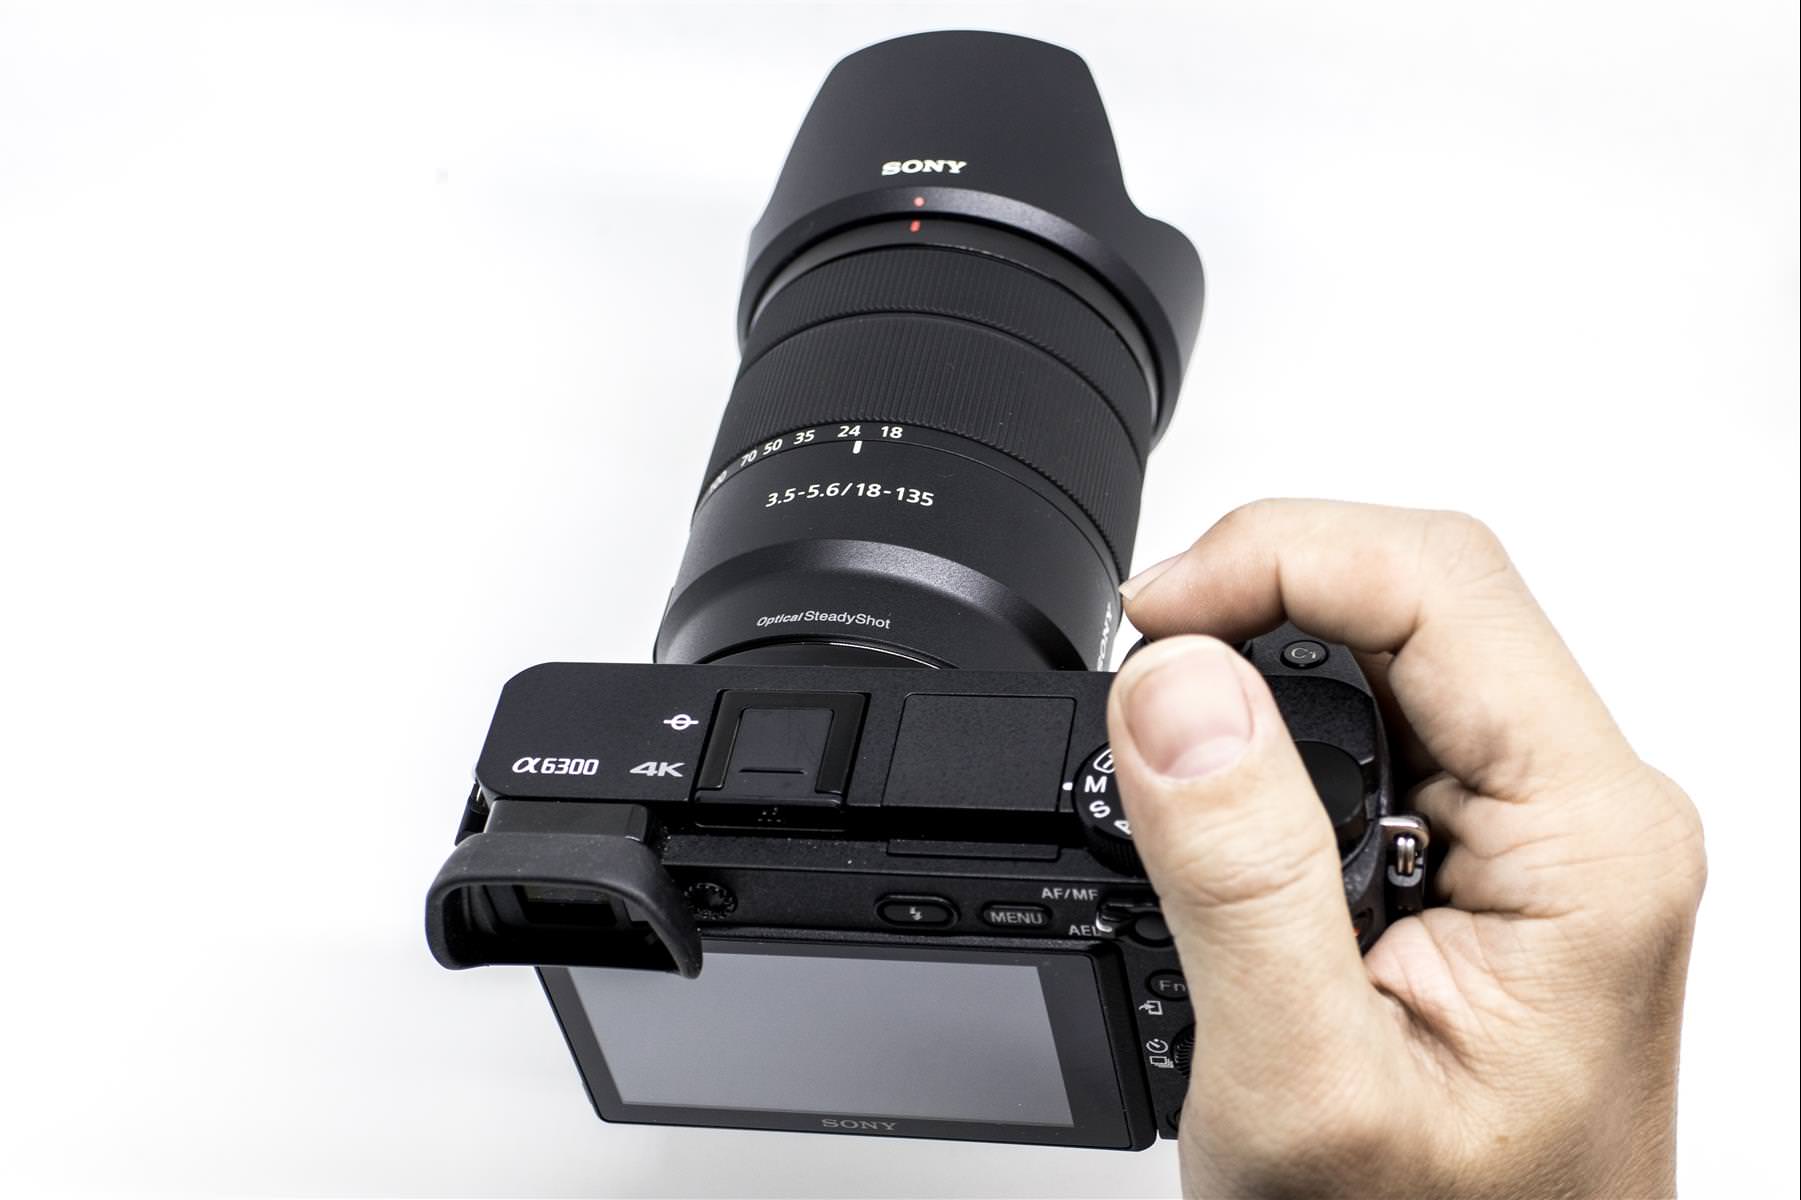 Sony E 18-135mm SEL18135